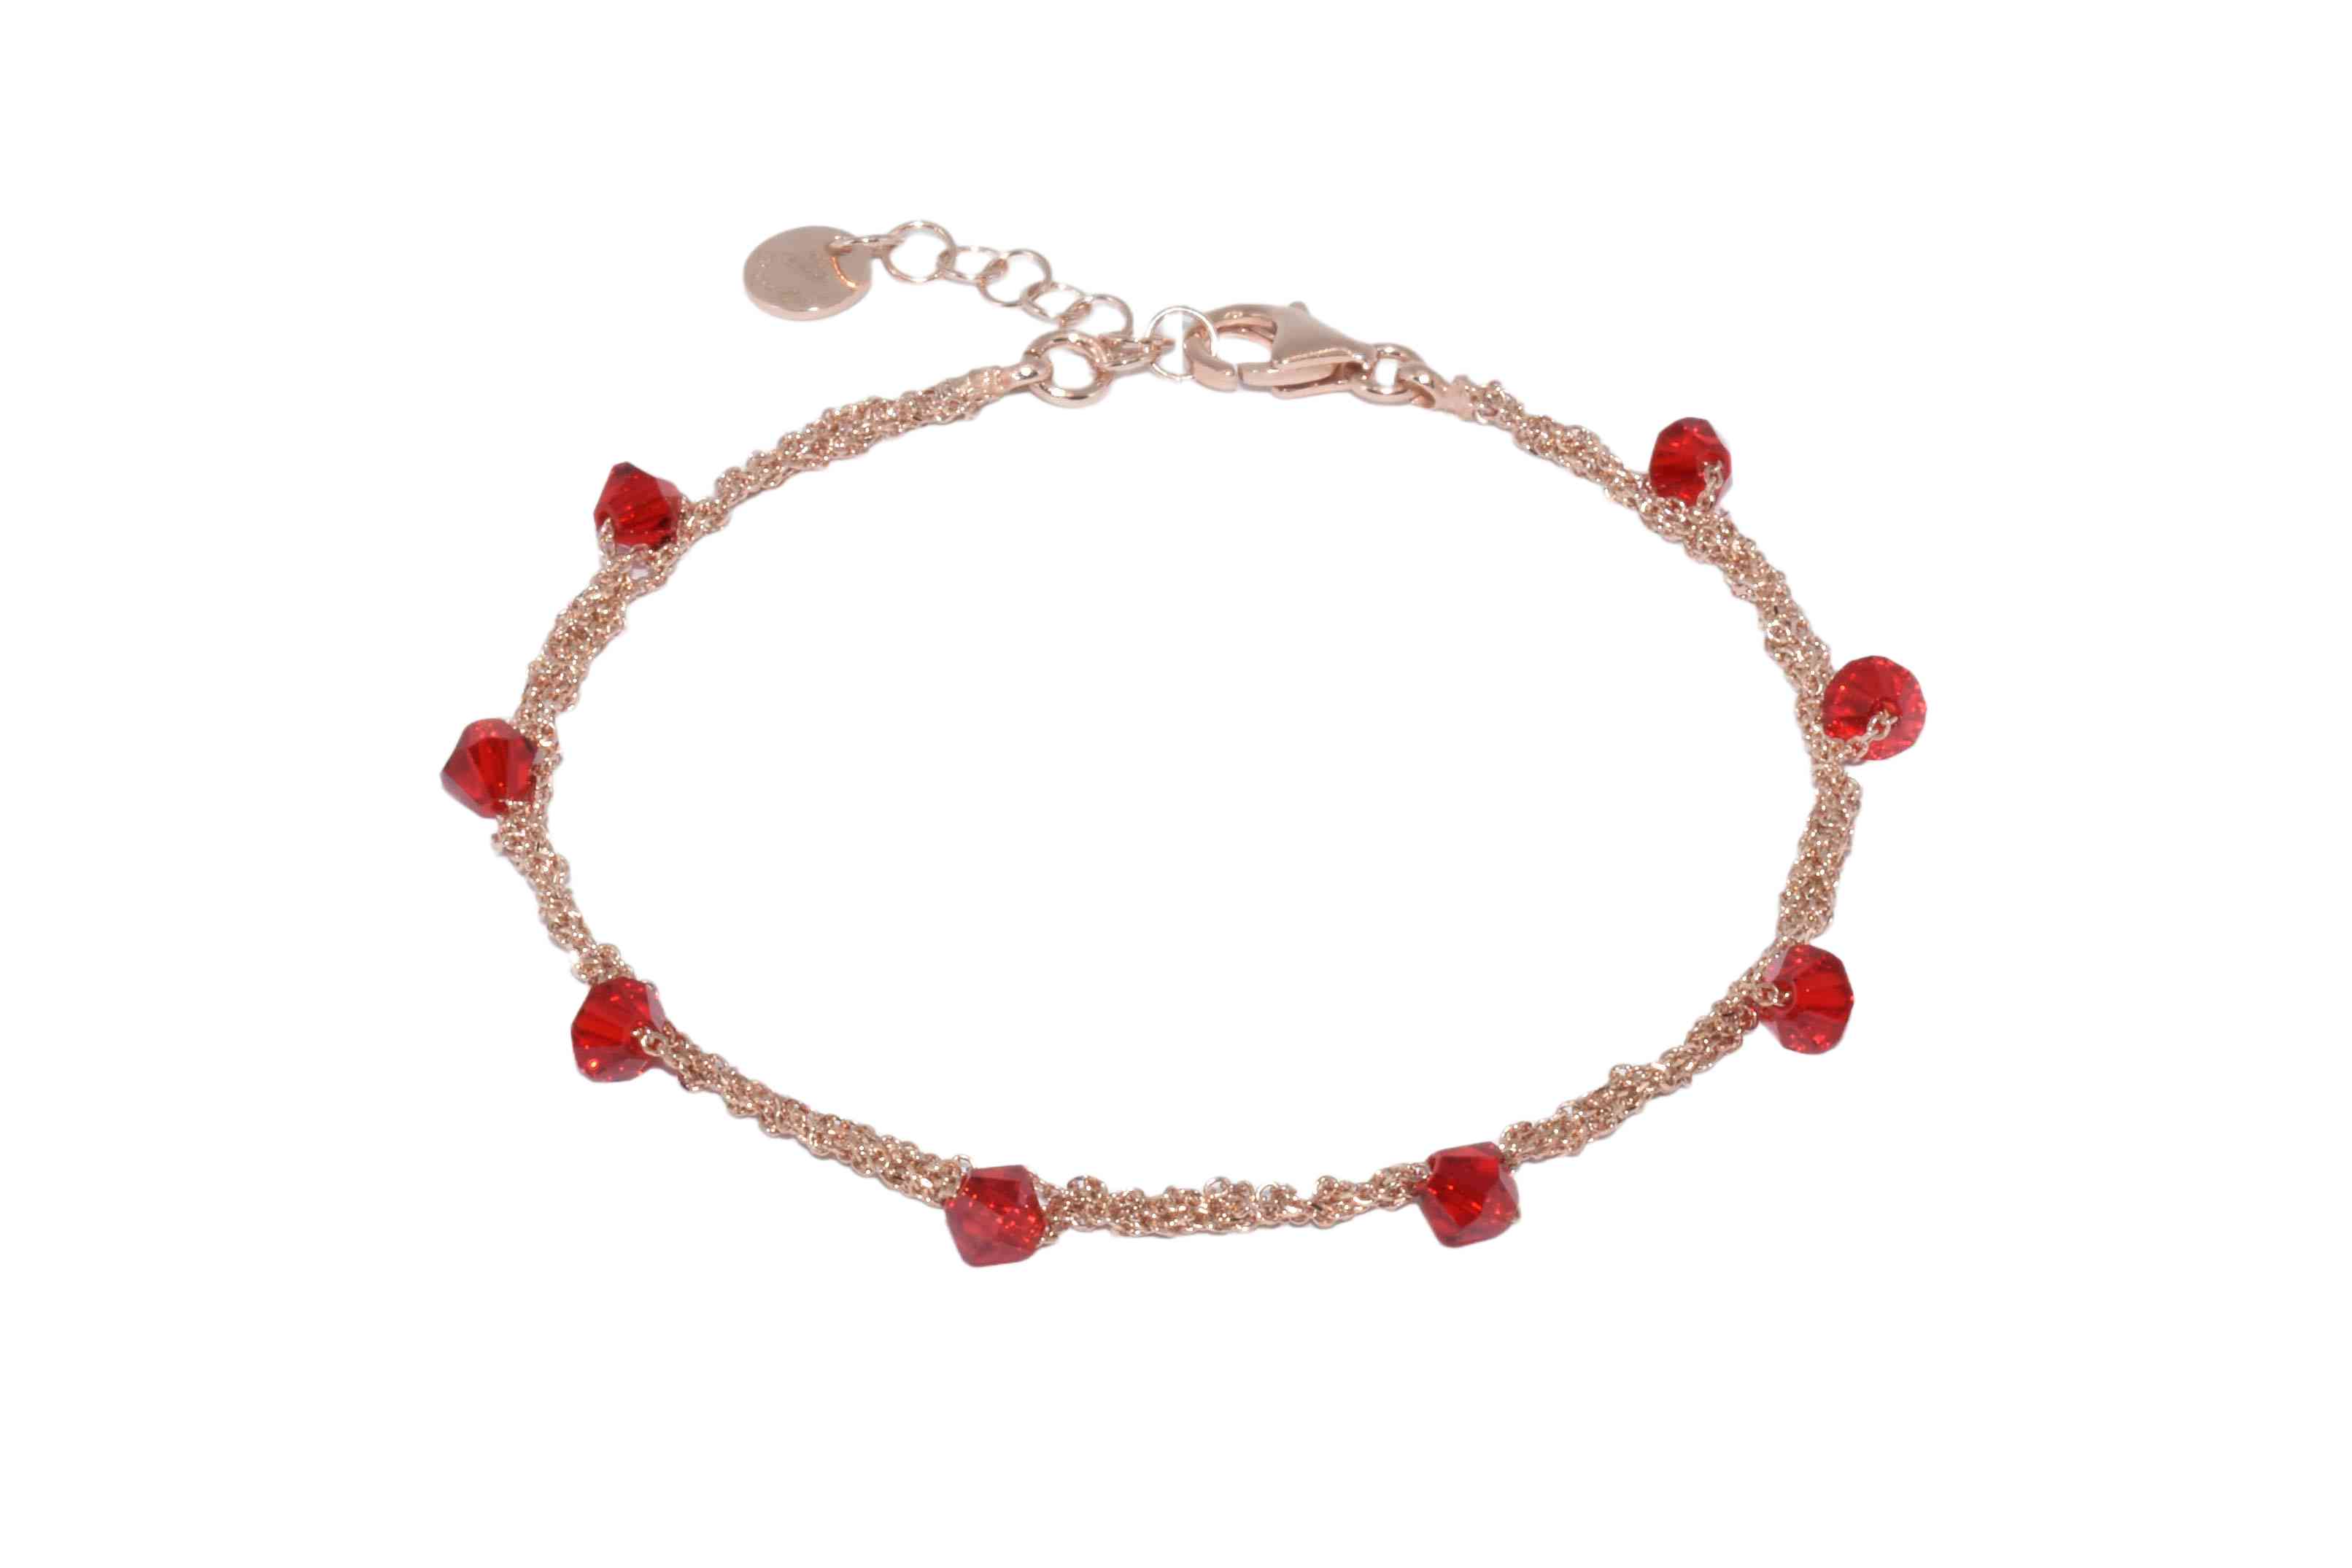 Bracciale-Uncinetto-rombi-rossi-Argentofilato-in-argento-925-oro-rosa